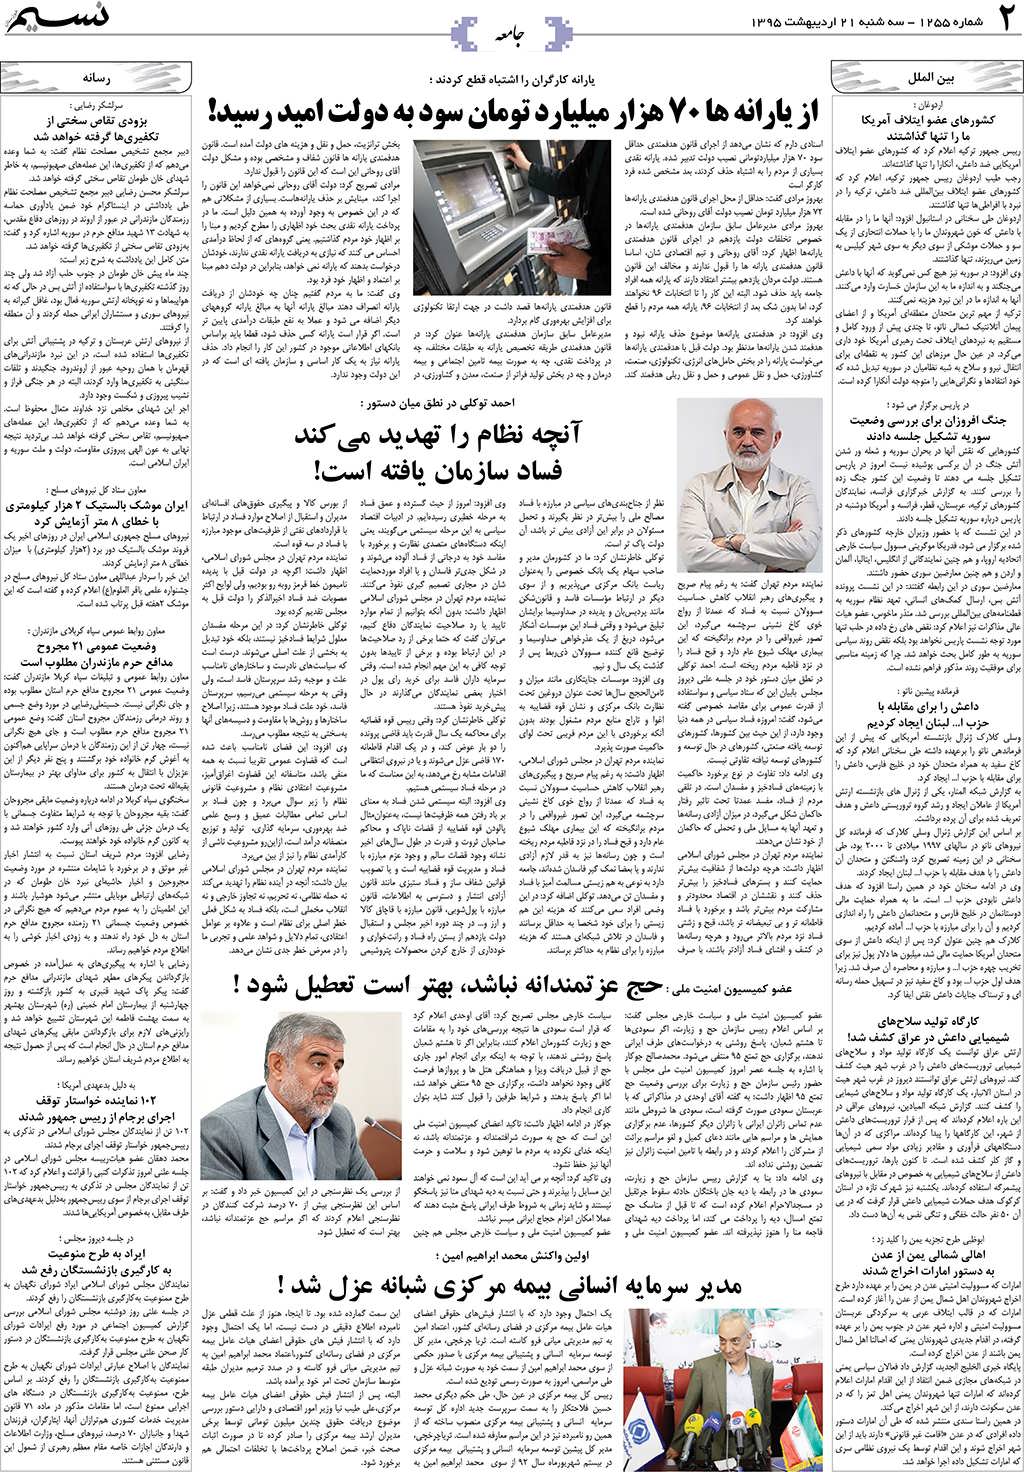 صفحه جامعه روزنامه نسیم شماره 1255